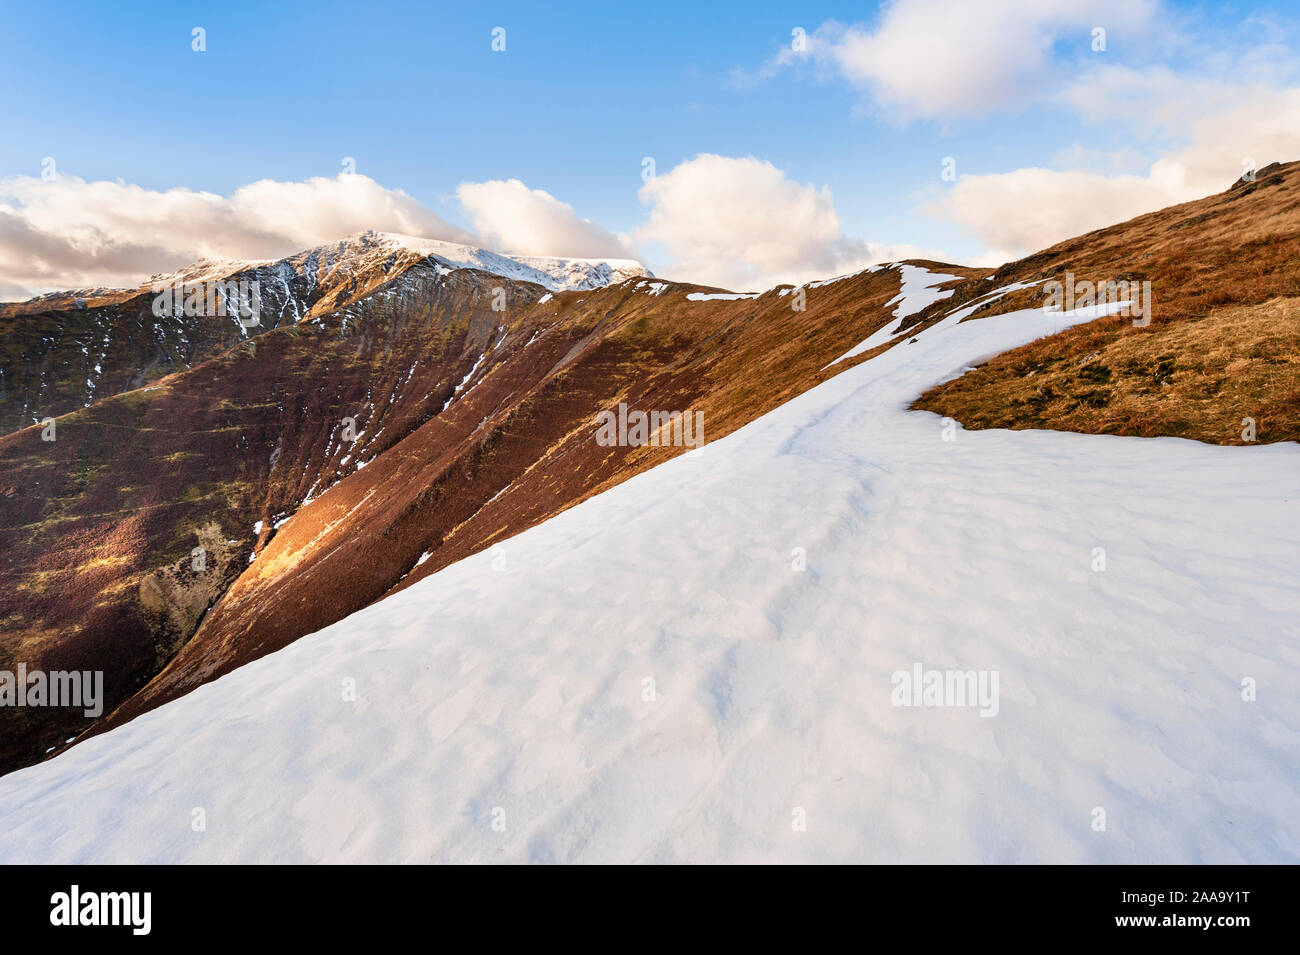 Winter Lake District escalas paisaje de montañas cubiertas de nieve que cayó líder cumbre de Blencathra / Saddleback uno de los Lakeland fells en Cumbria Foto de stock